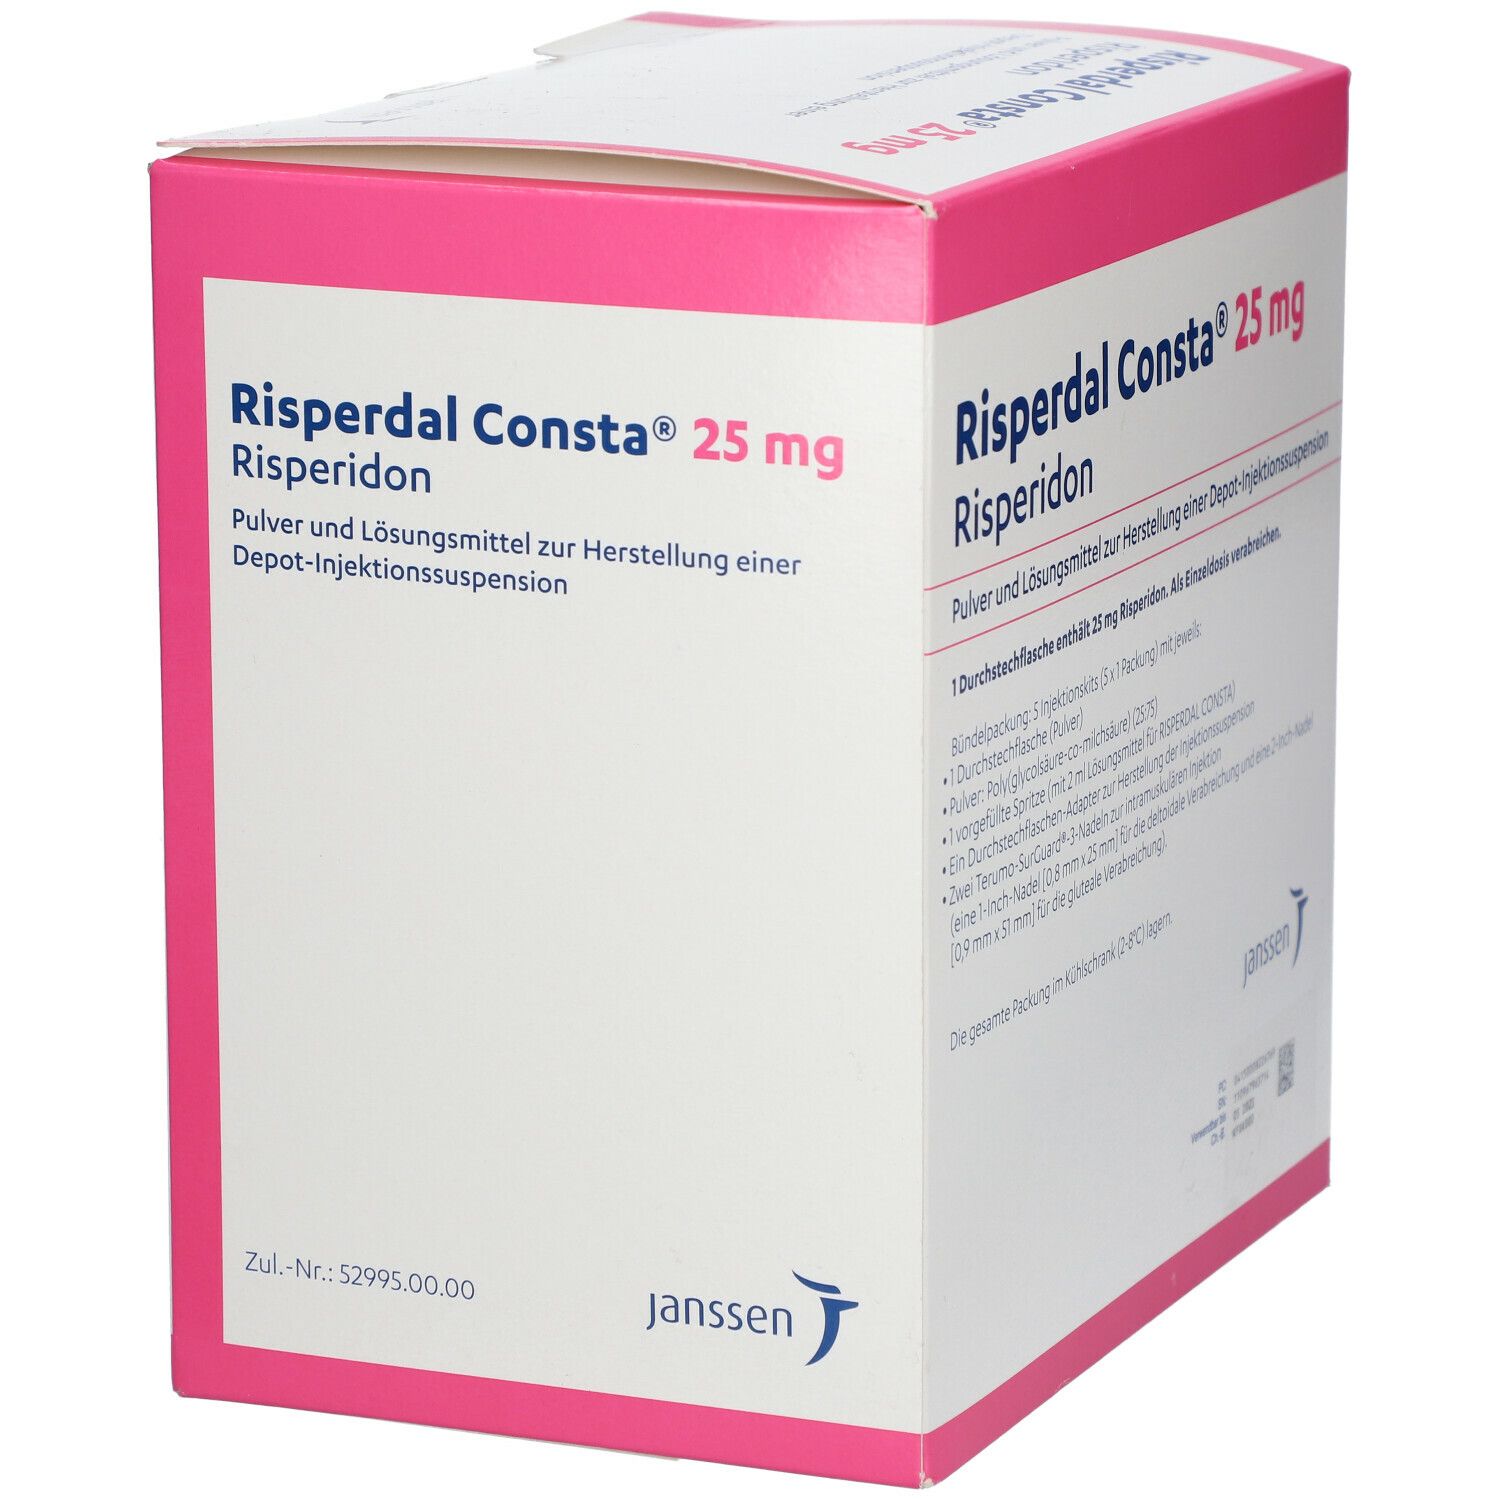 Risperdal Consta® 25 mg